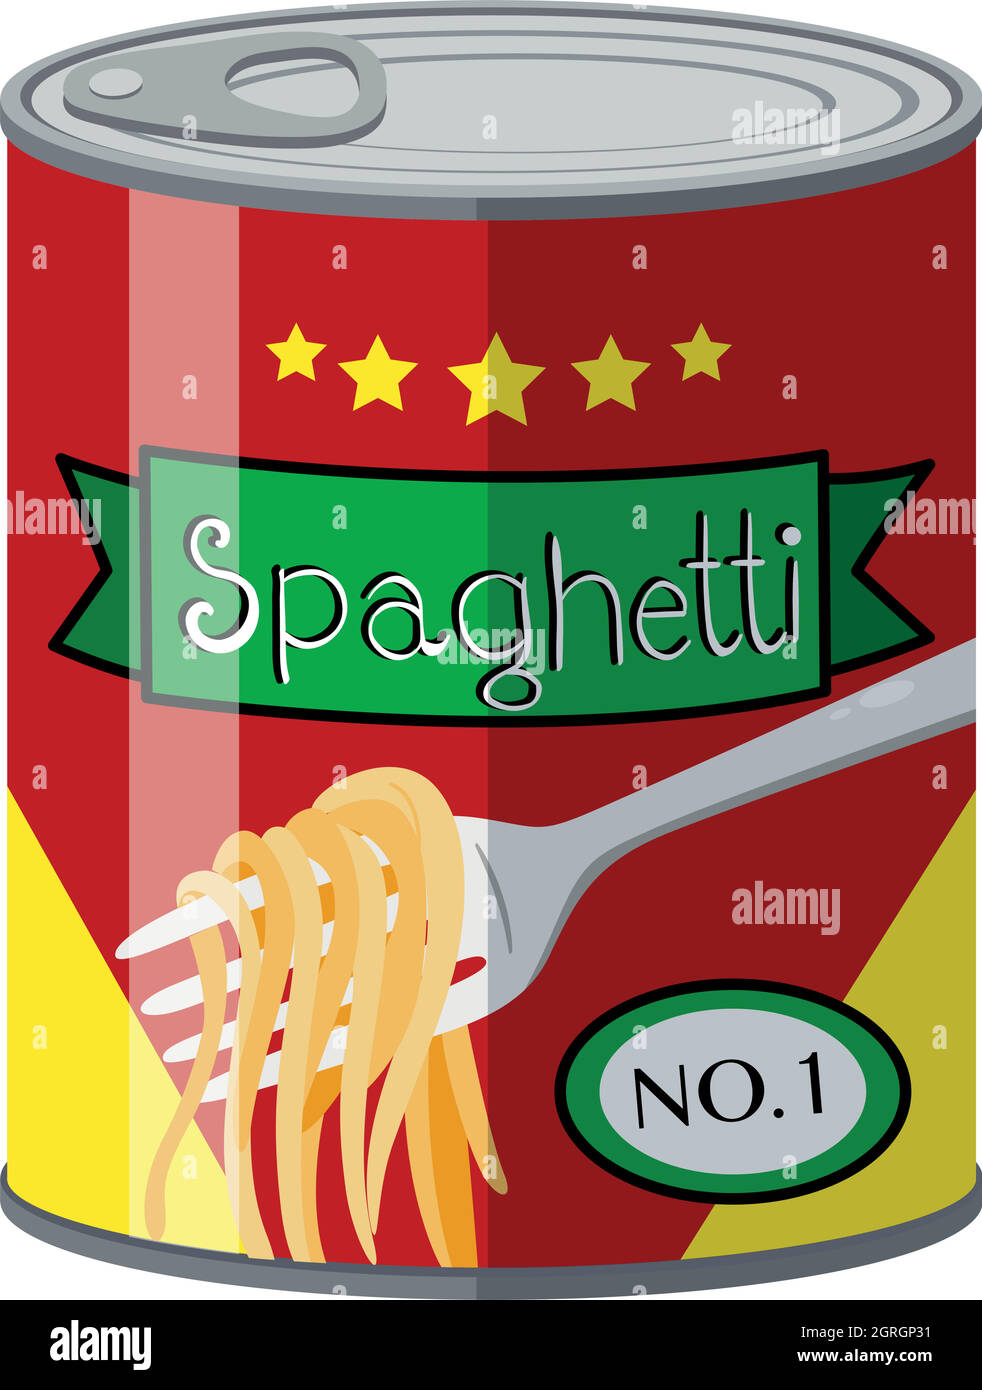 Nourriture en conserve avec spaghetti Illustration de Vecteur